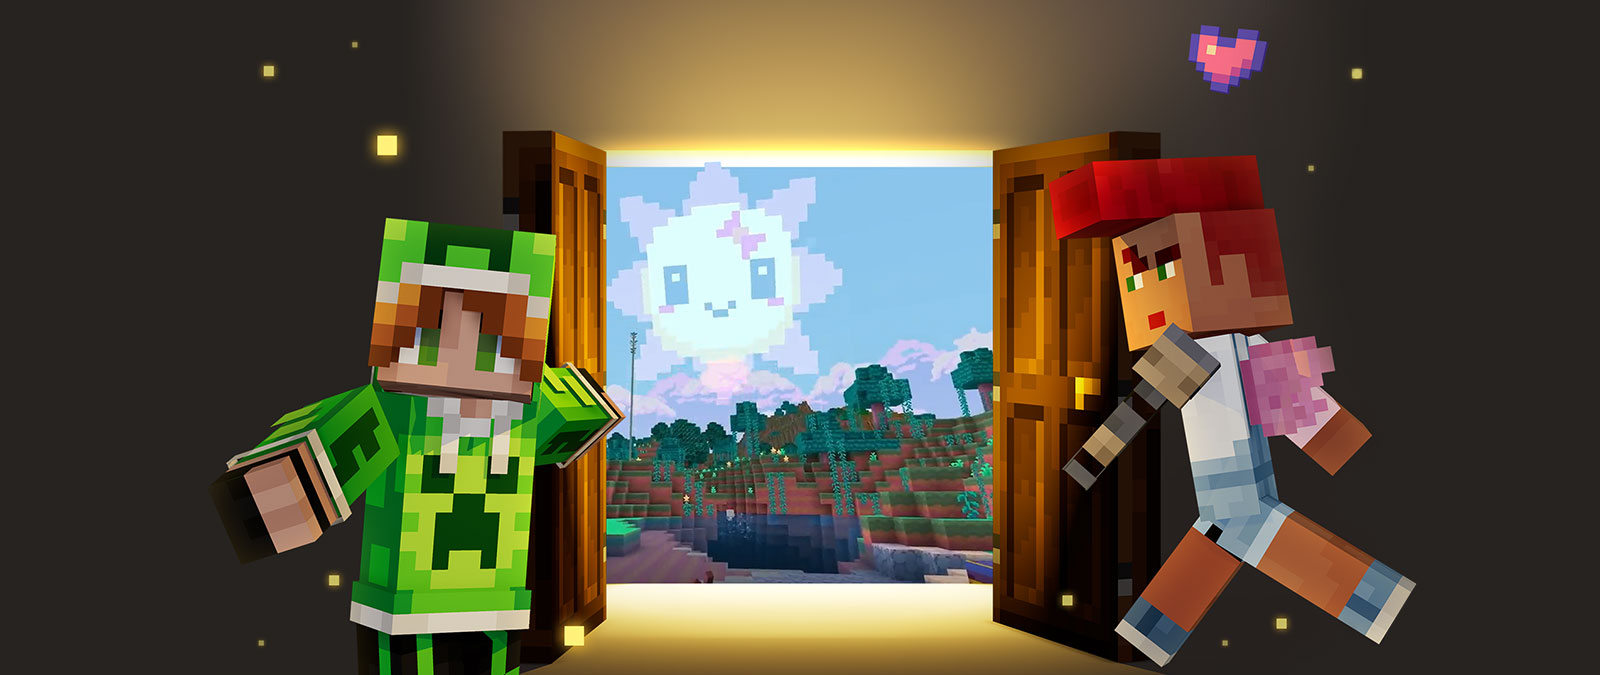 Dos personajes de Minecraft te acogen por una puerta al mundo de Minecraft.